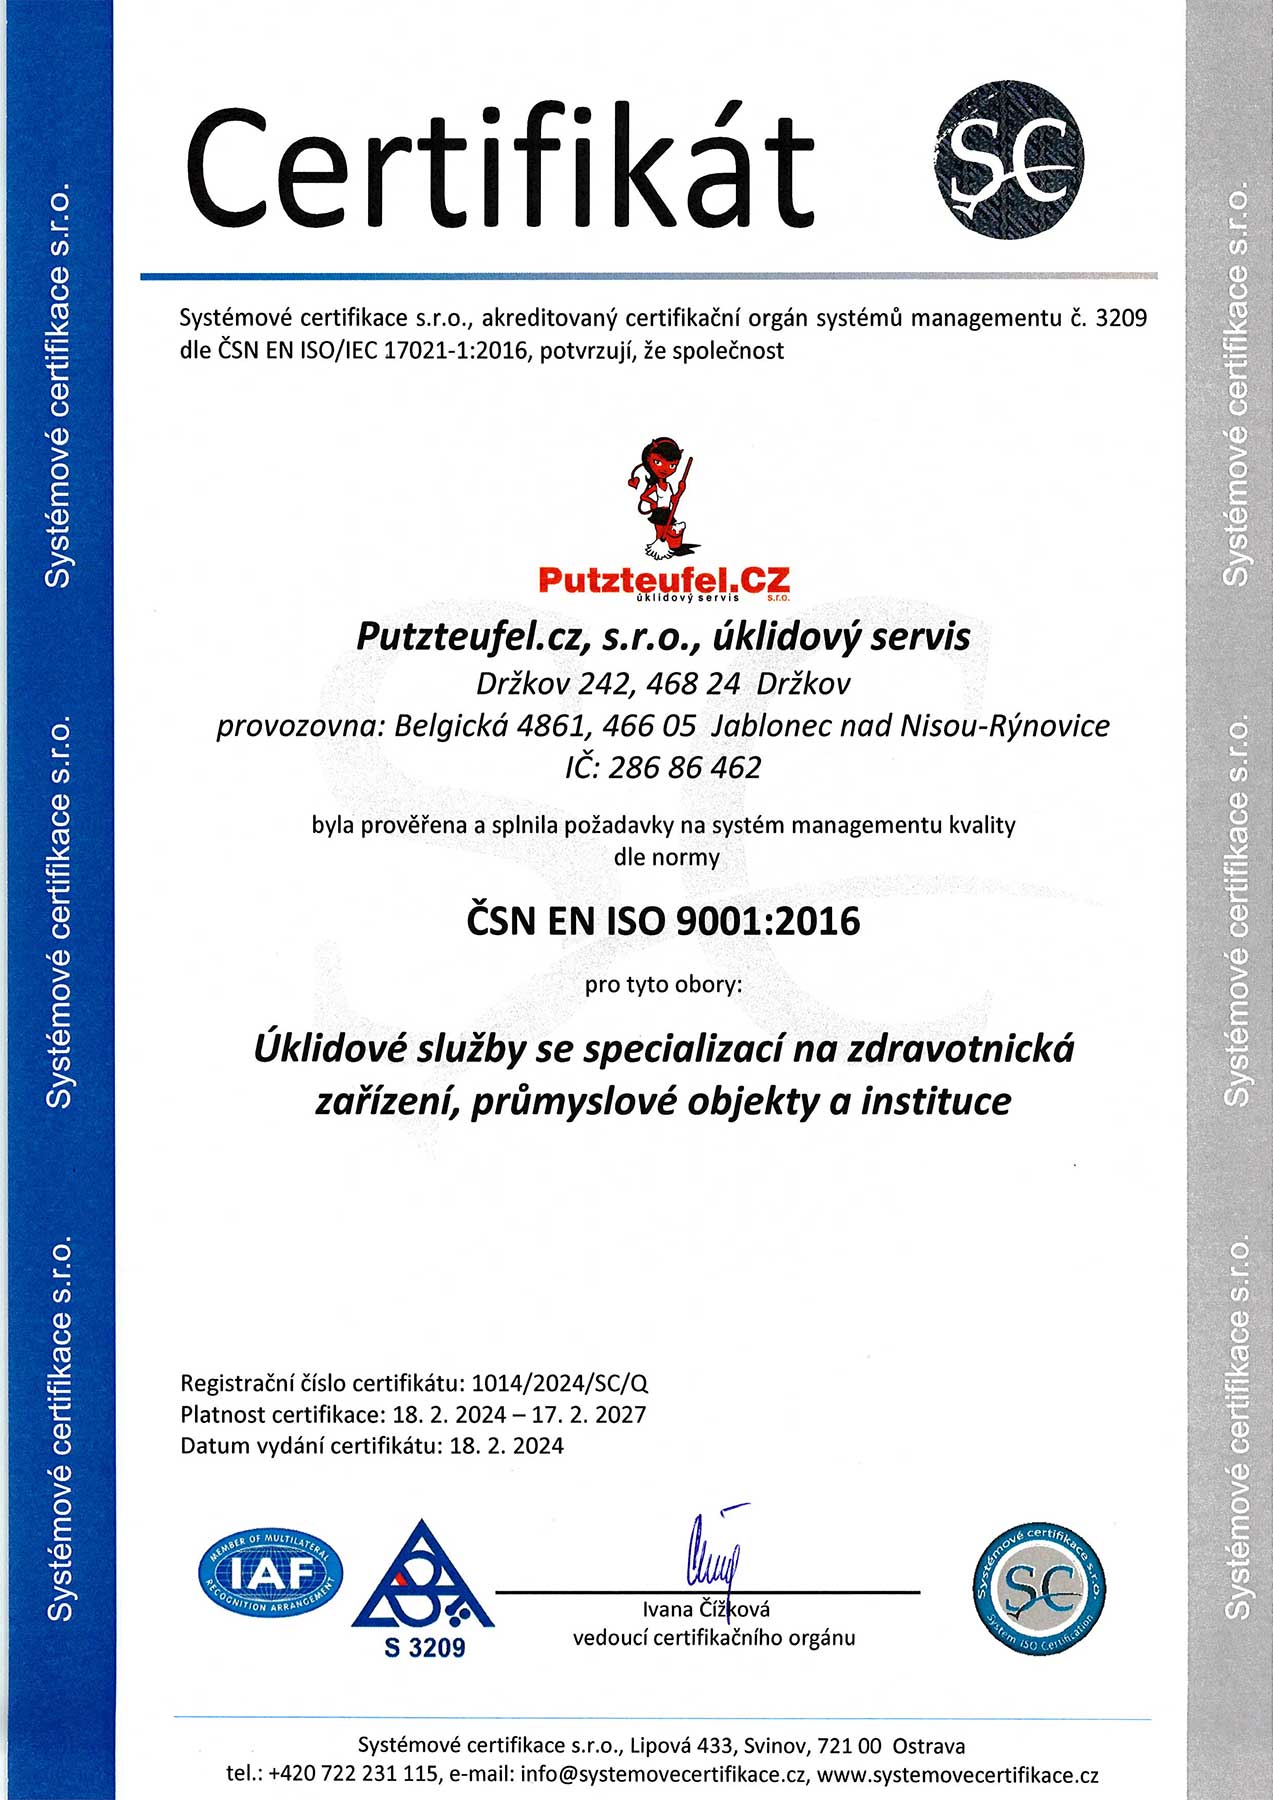 Putzteteufel Certifikát ISO 9001